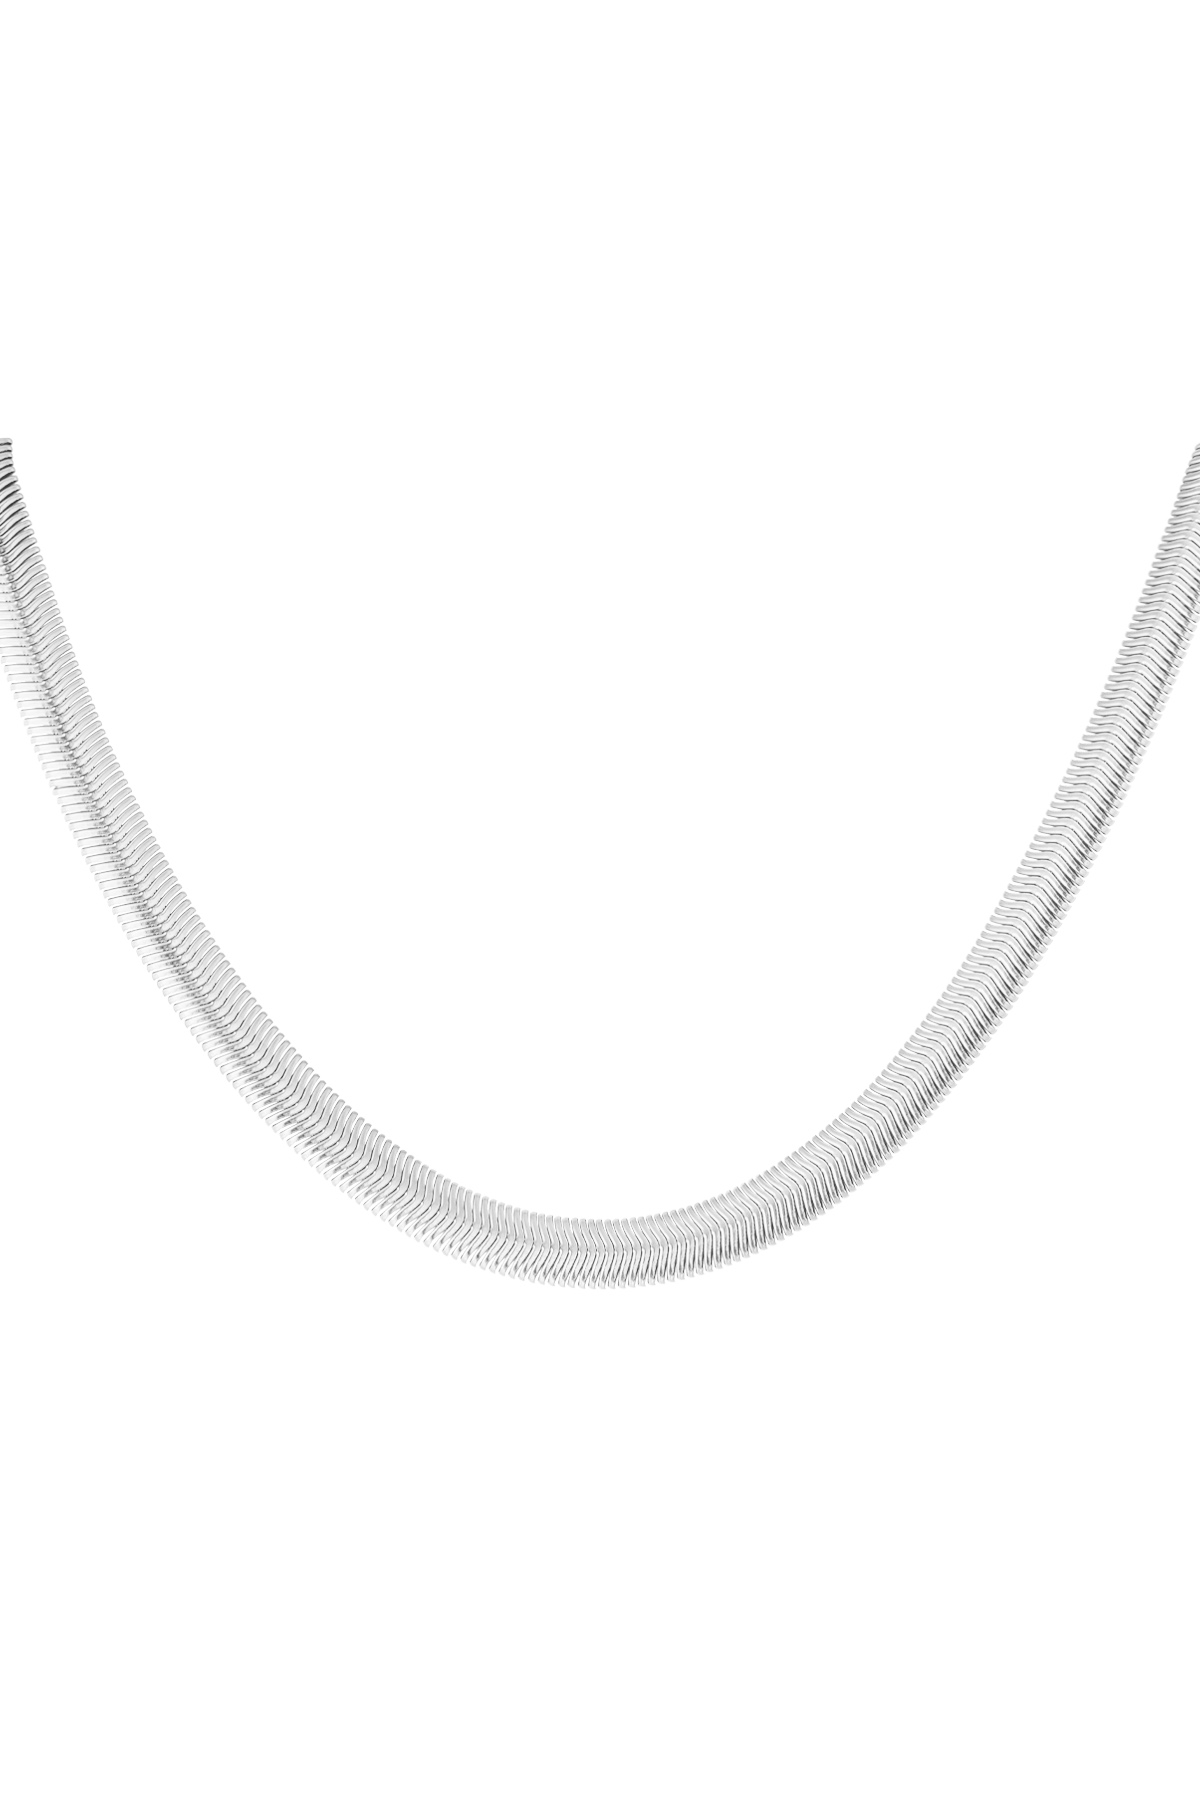 Unisex Halskette flach geflochten - Silber - 8,0MM h5 